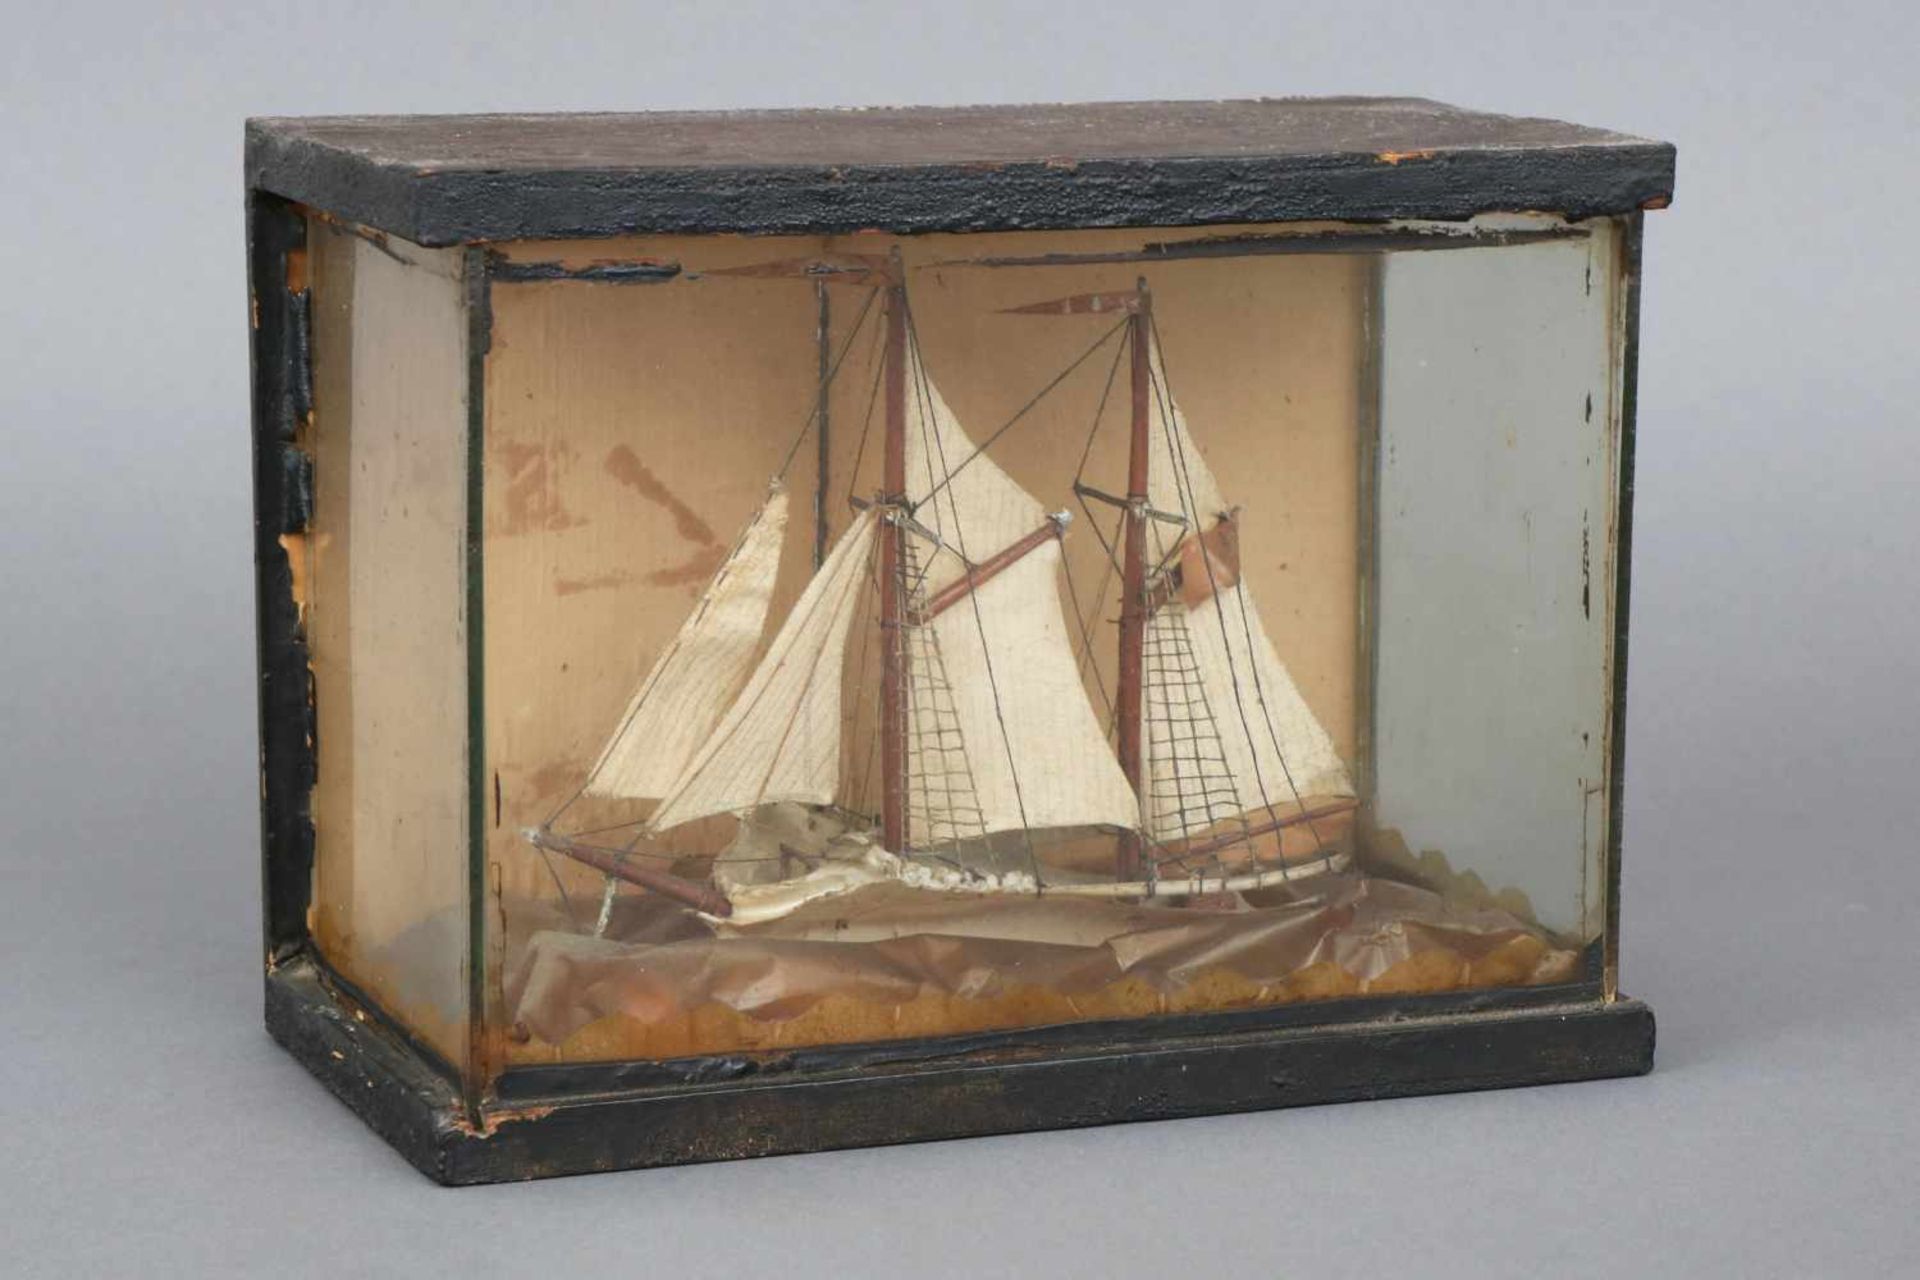 Schiffsmodell/Diorama19. Jahrhundert, ¨2-Master¨, Rumpf aus (Walfisch?)Knochen, Leinensegel,